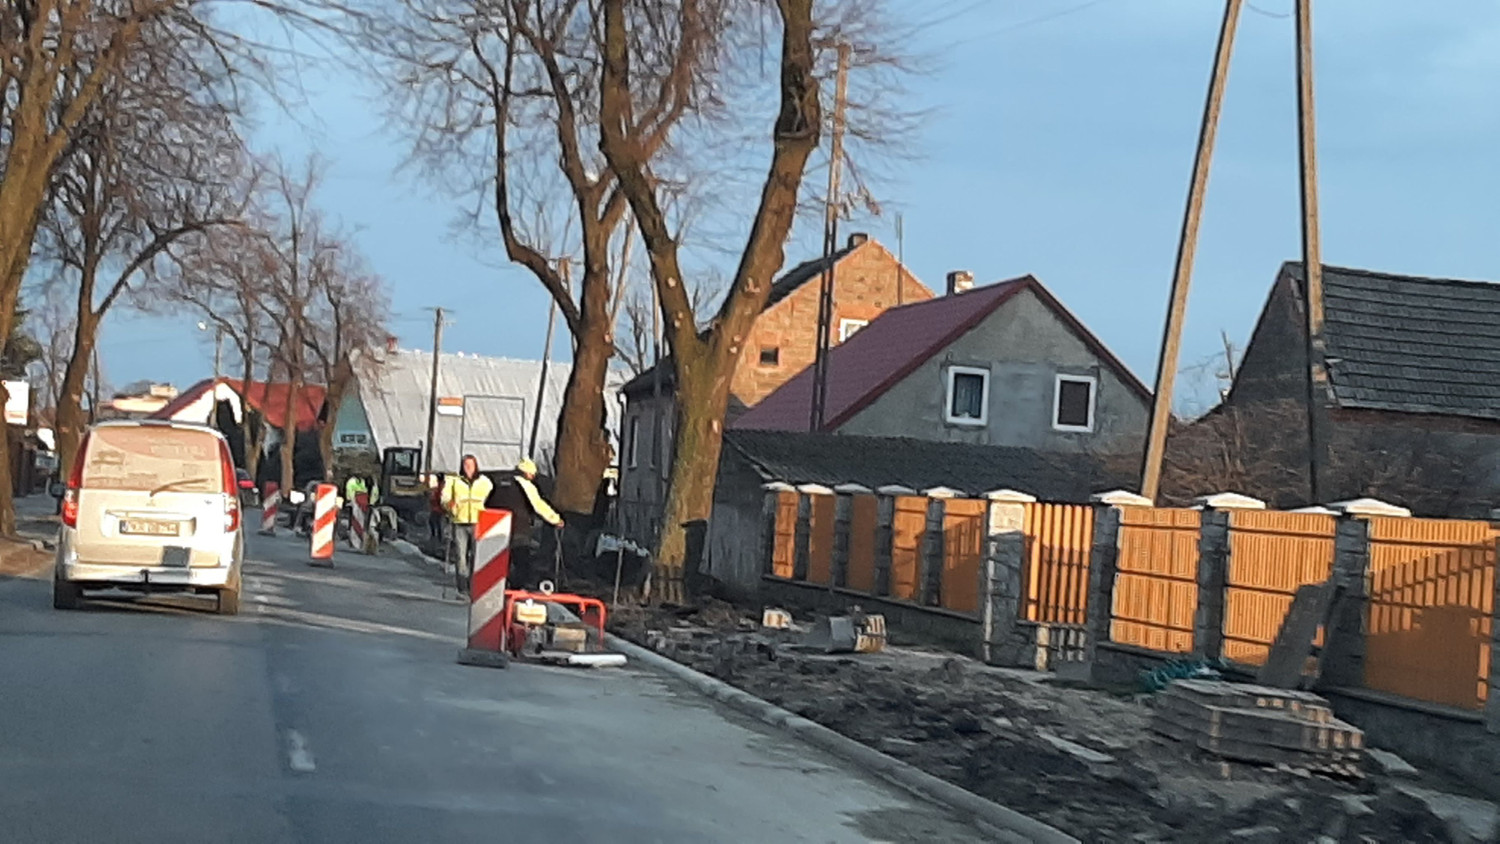 Budowa ścieżki Rawicz - Osiek. Mieszkańcy Chojna ze zdumieniem przyglądają się inwestycji  - Zdjęcie główne